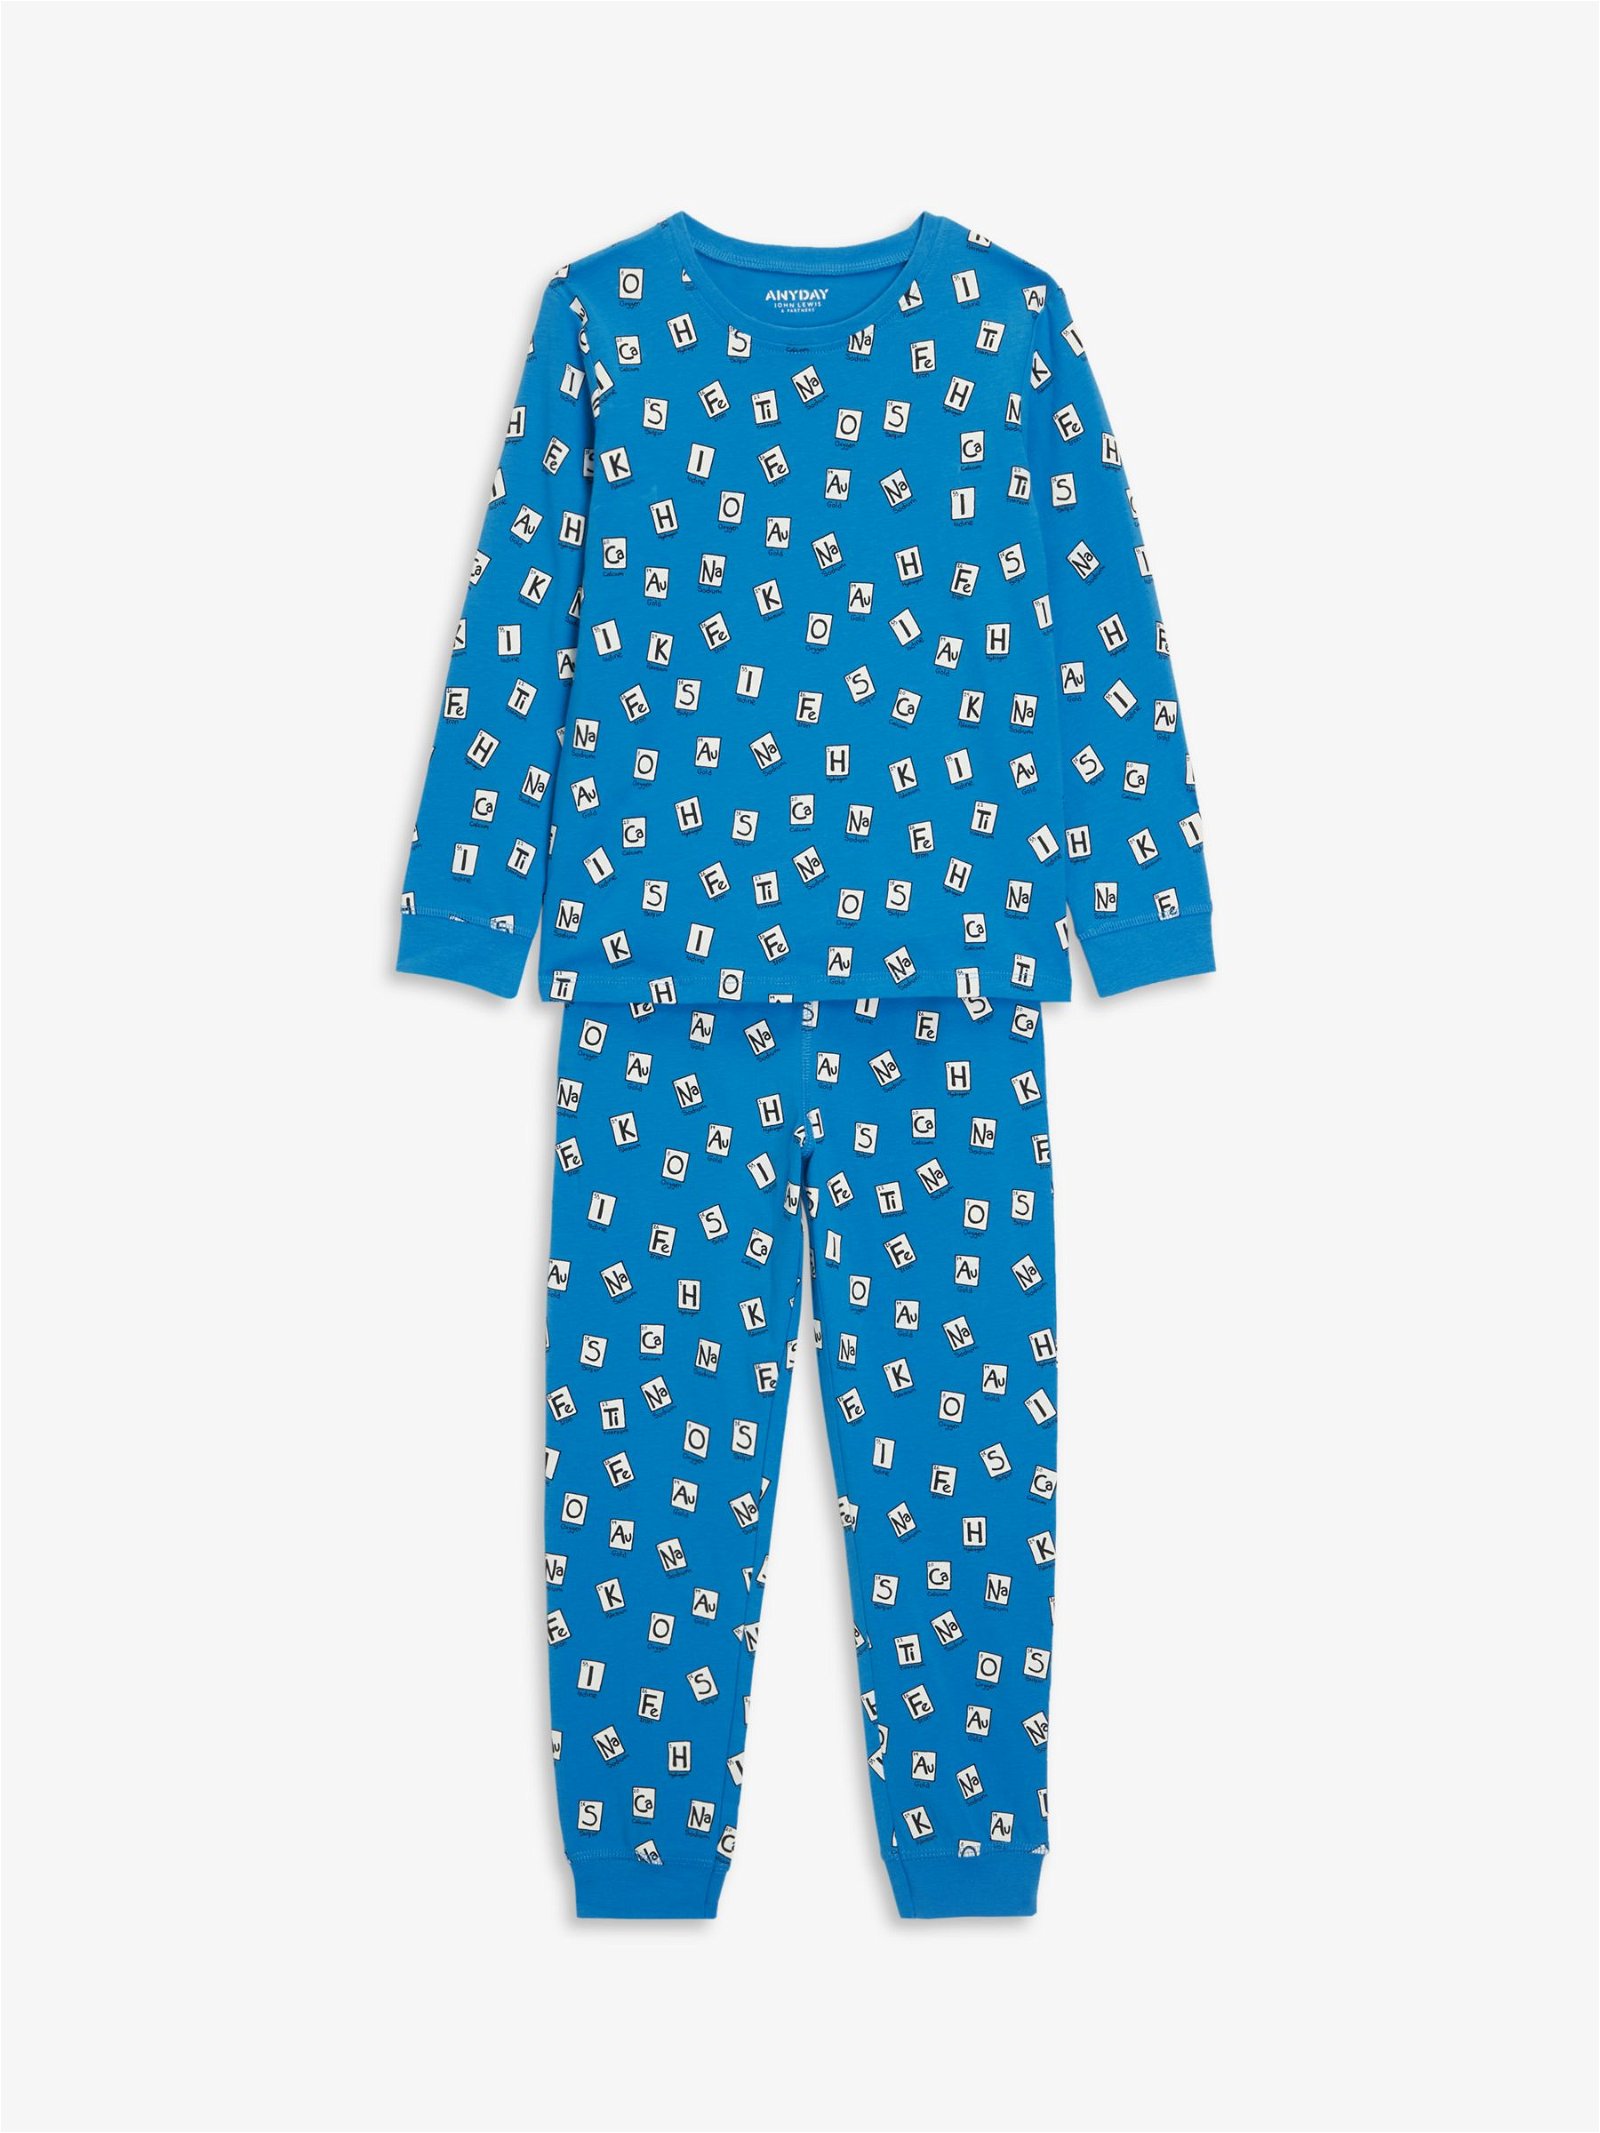 John Lewis Kids' Pointelle & Brushed Cotton Pyjama Set, Blue/Multi, 5 years